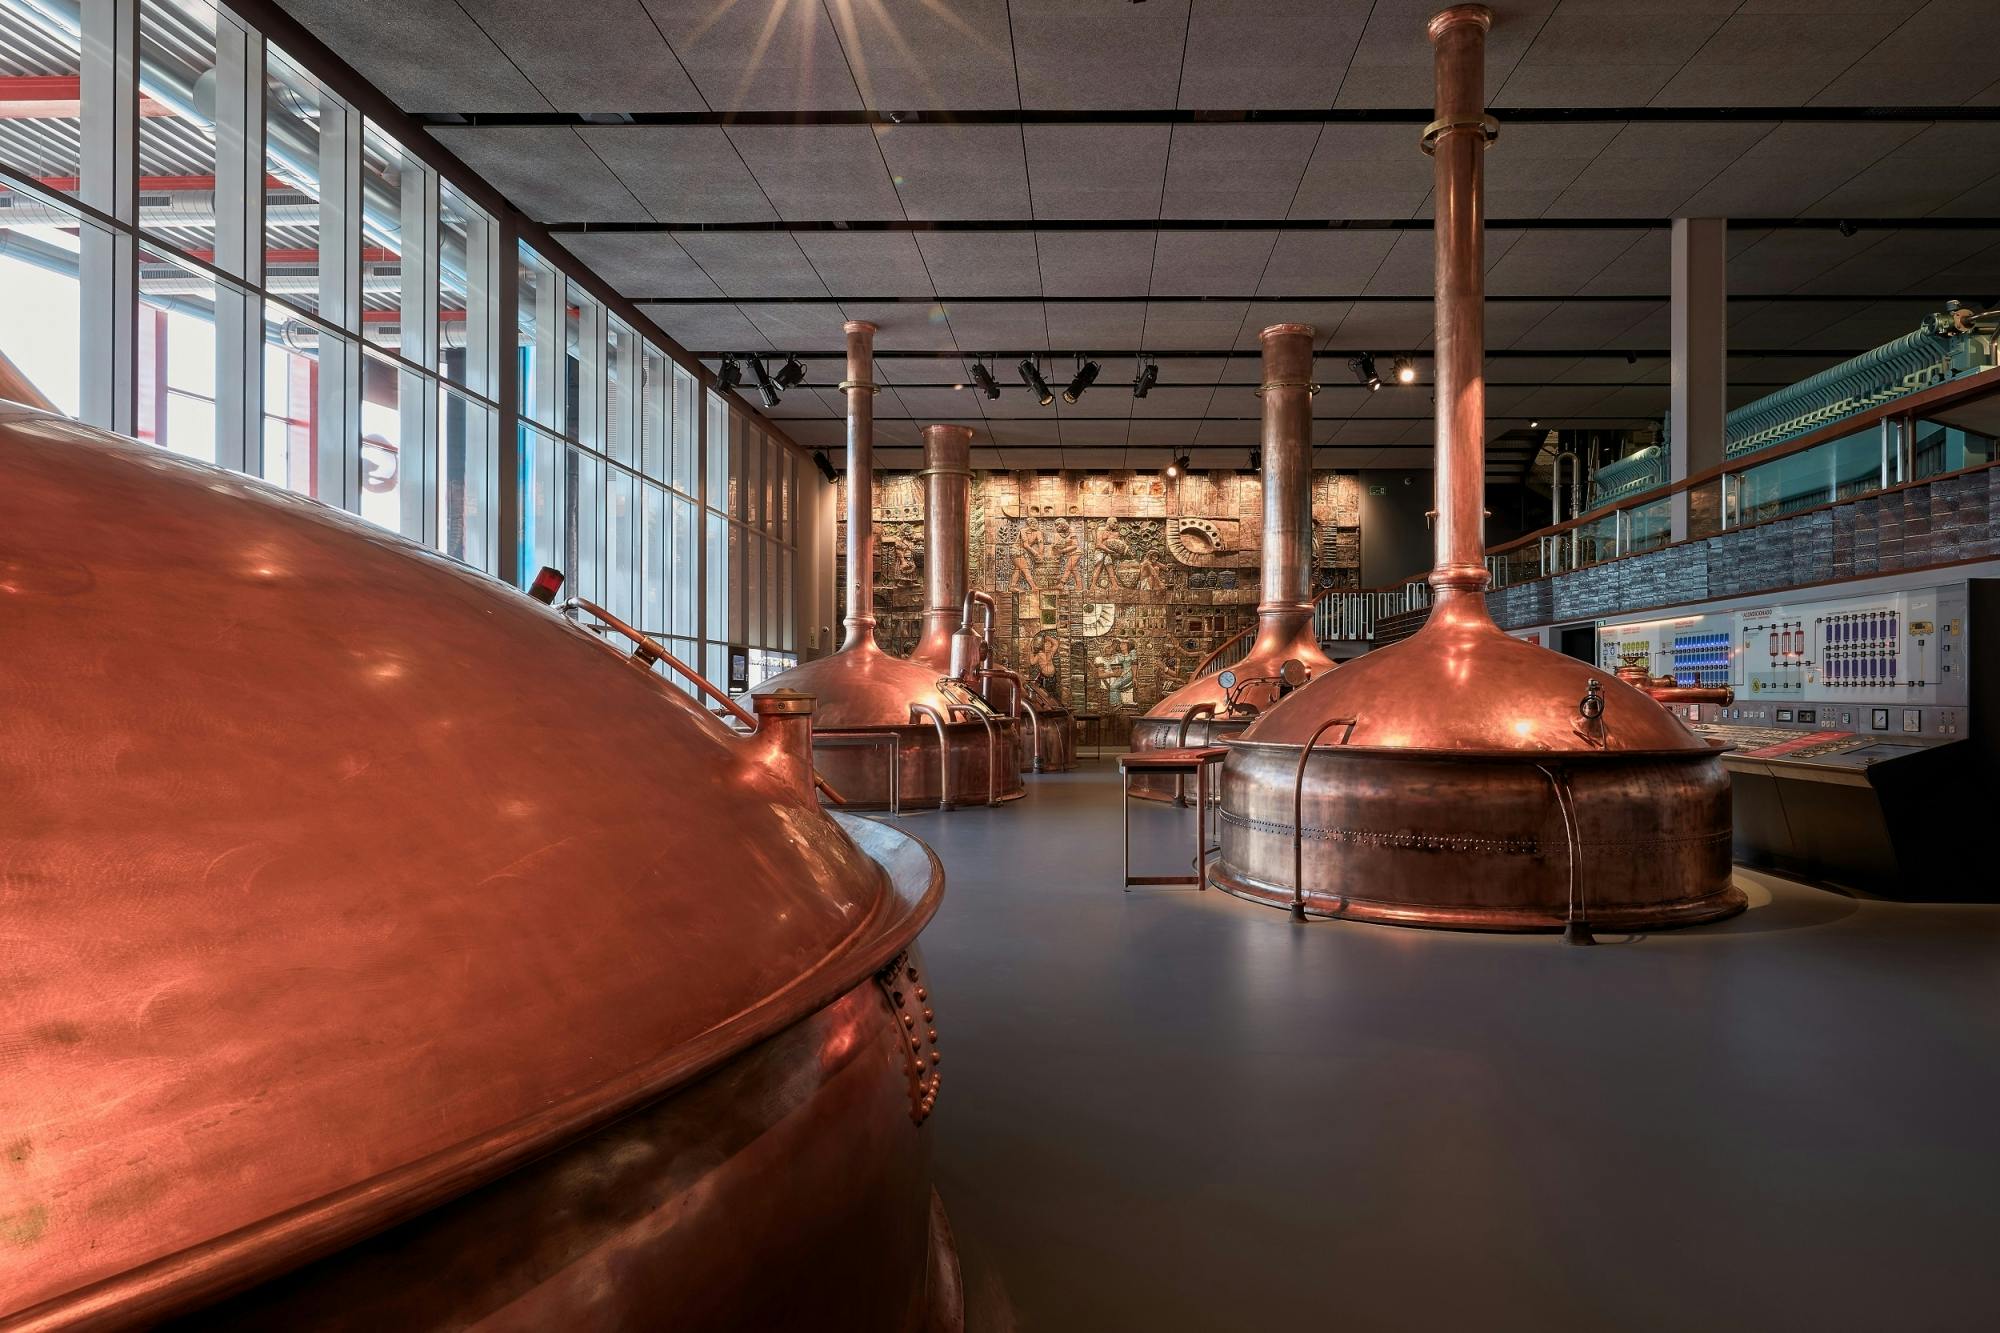 Visita guidata al Museo Estrella Galicia con degustazione di birra e salumi